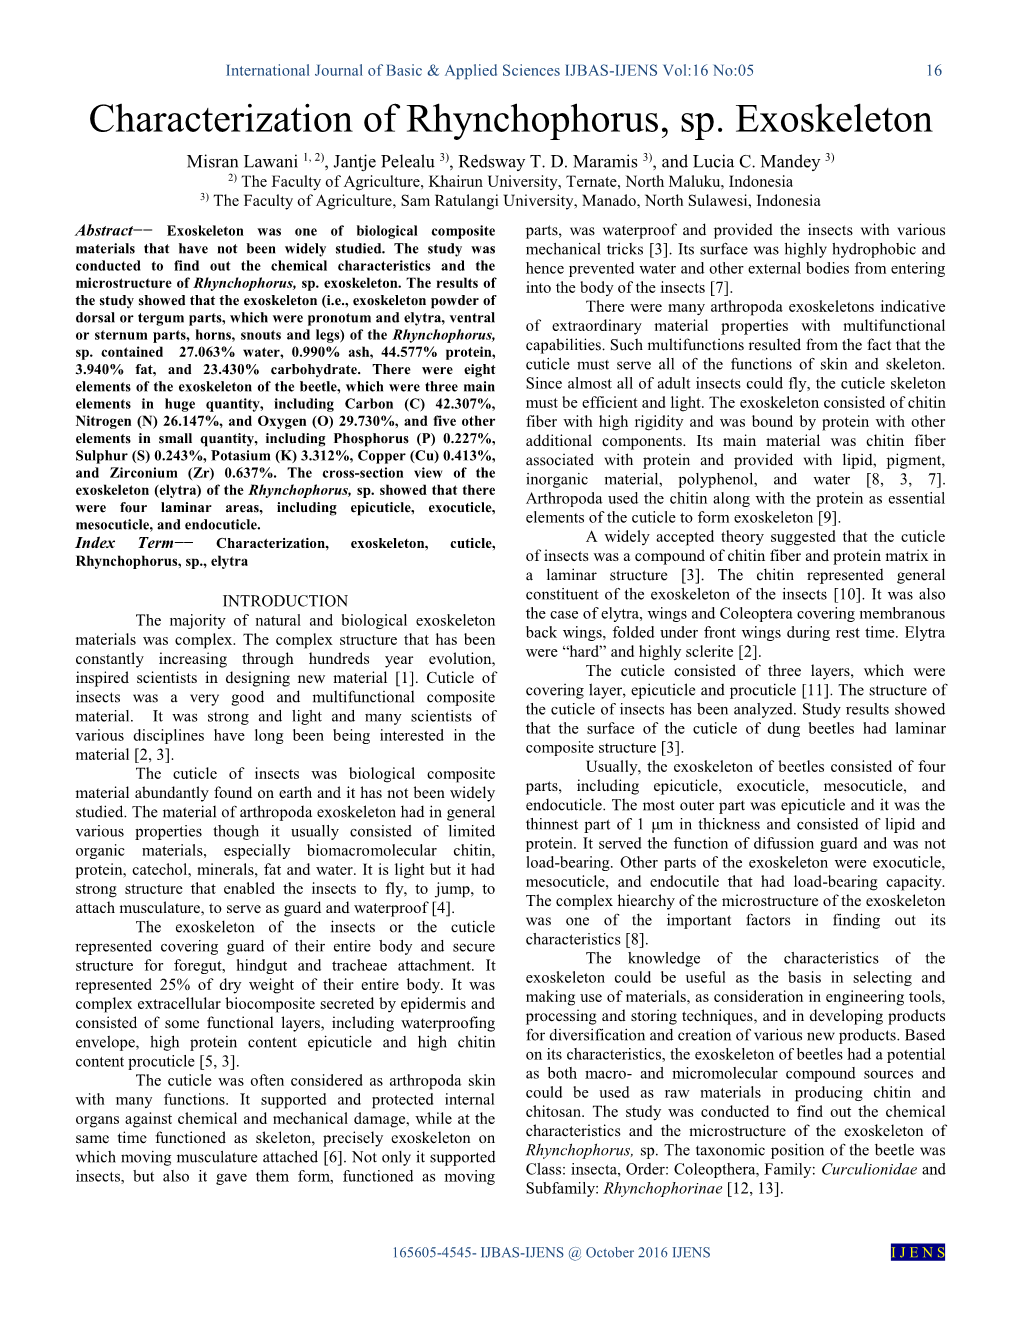 Characterization of Rhynchophorus, Sp. Exoskeleton Misran Lawani 1, 2), Jantje Pelealu 3), Redsway T